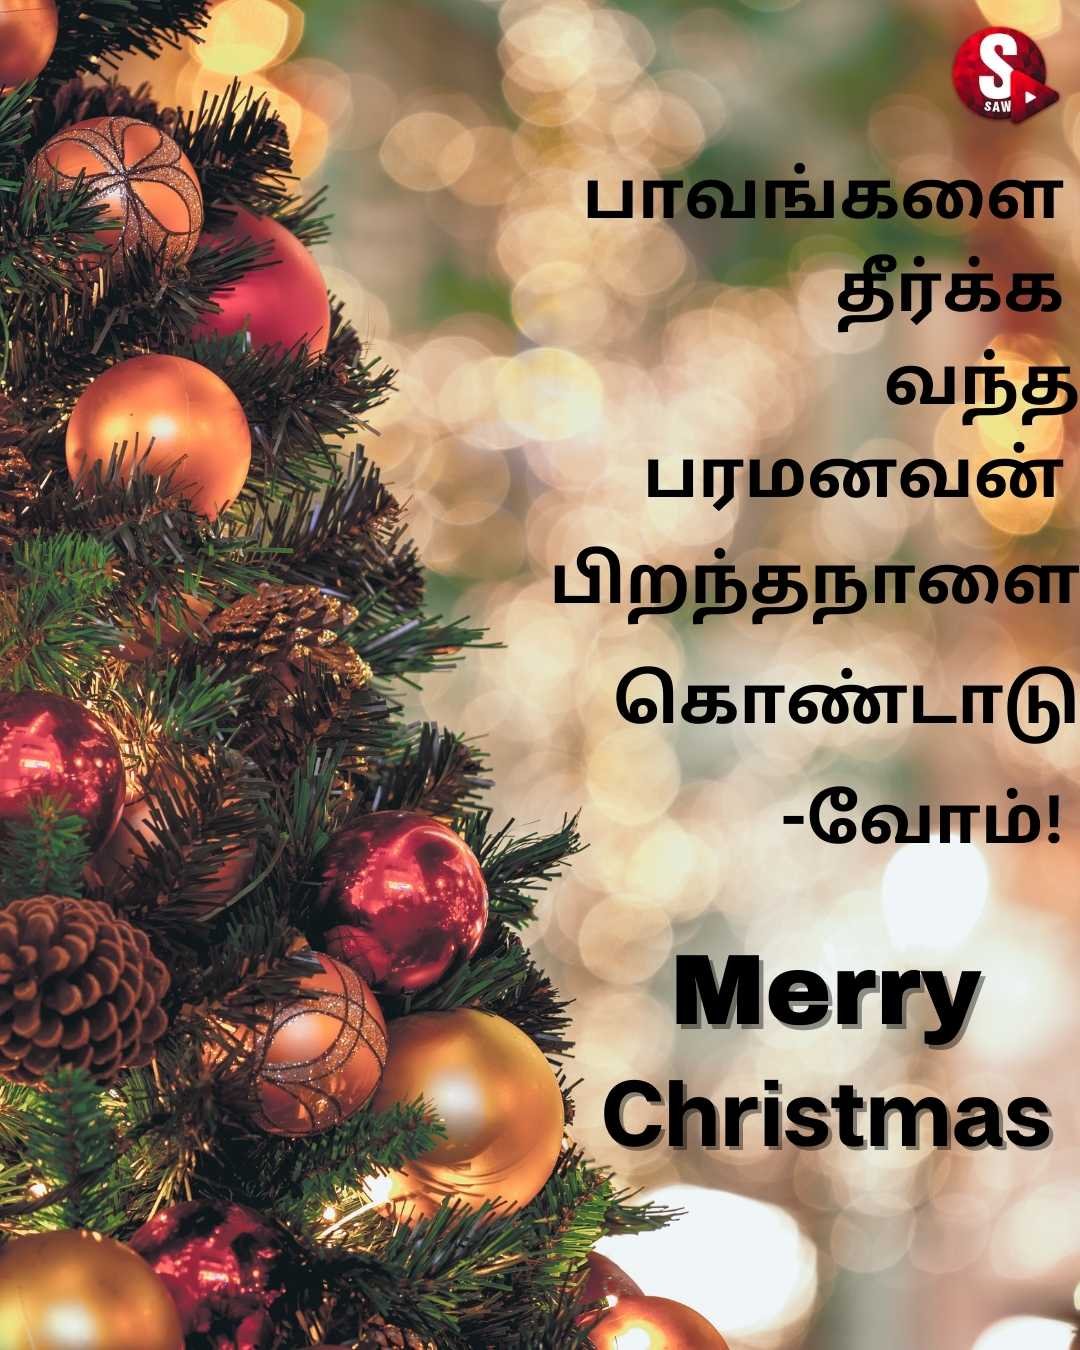 இனிய கிறிஸ்துமஸ் தின நல்வாழ்த்துக்கள் அனைவருக்கும் | Christmas Wishes in Tamil | Christmas Quotes in Tamil